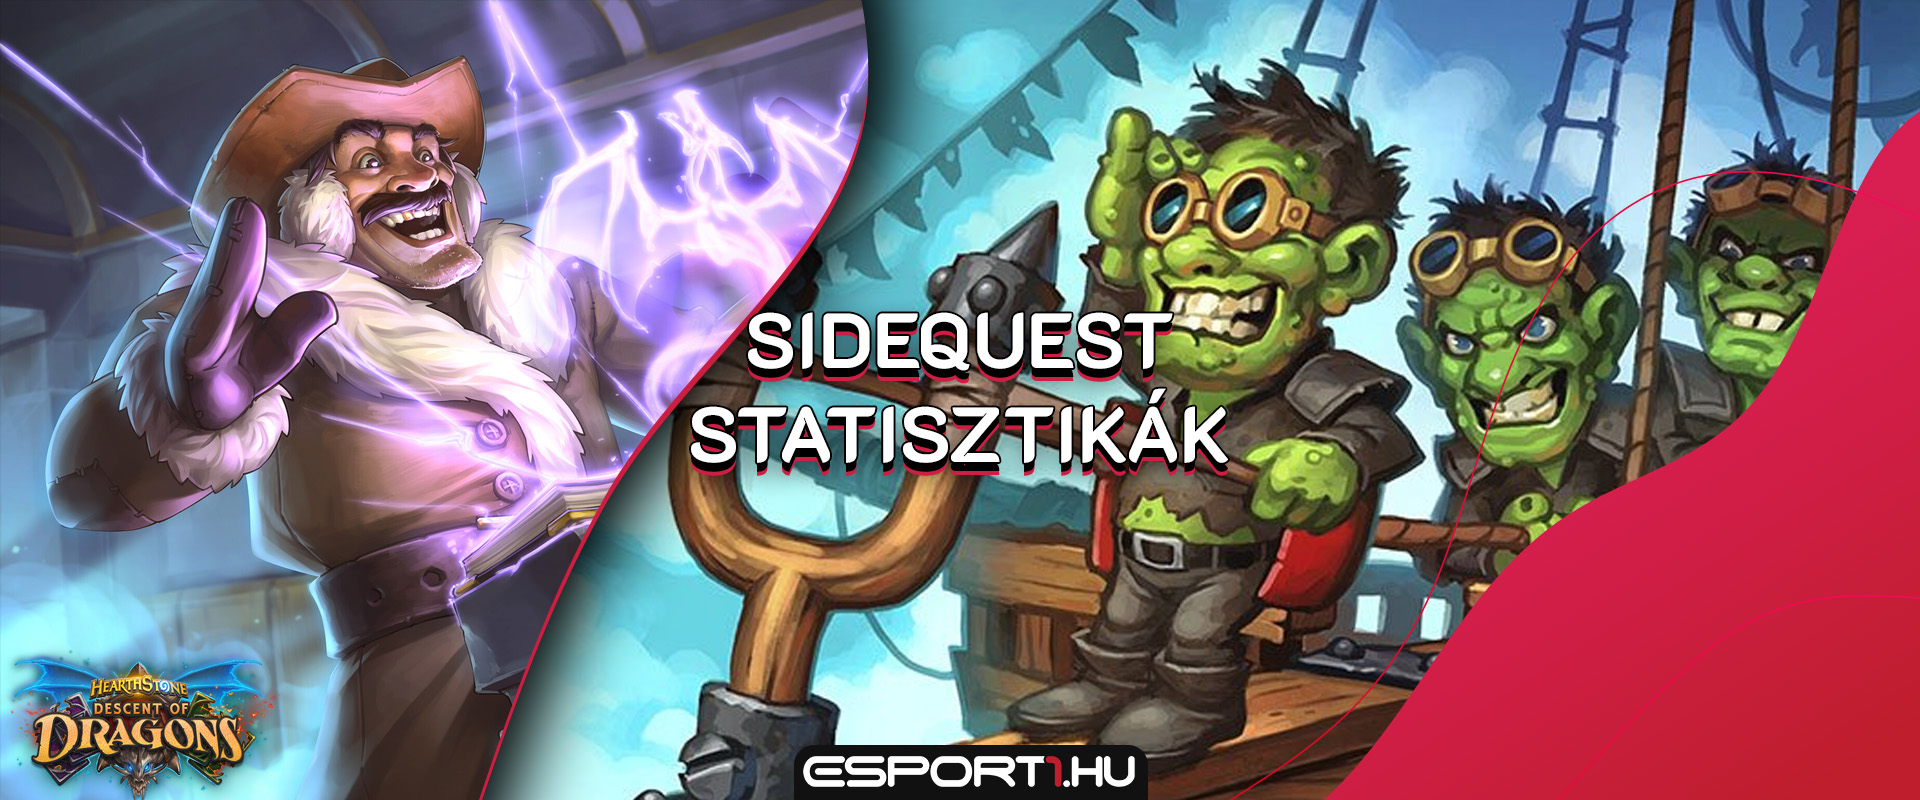 Sidequest statisztikák - Hódítanak a Leper Gnome hordák!